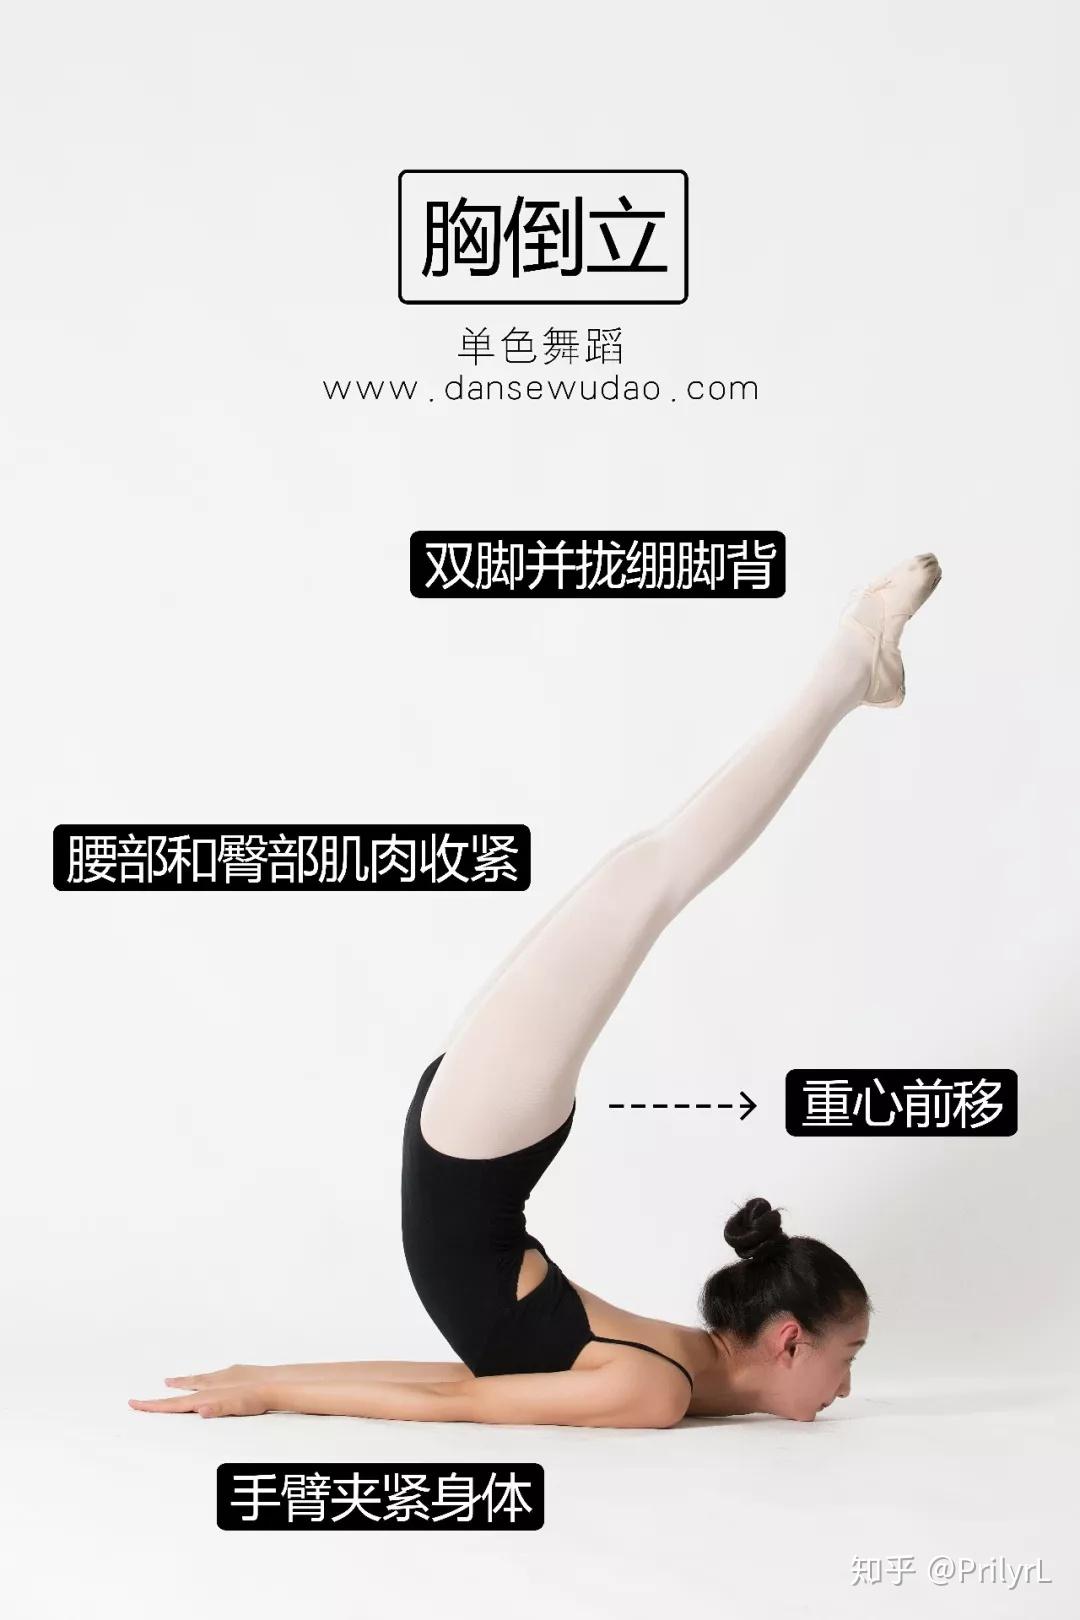 16个中国舞基本功合集 | 一字马、压脚背、推胸腰...（建议收藏） - 知乎